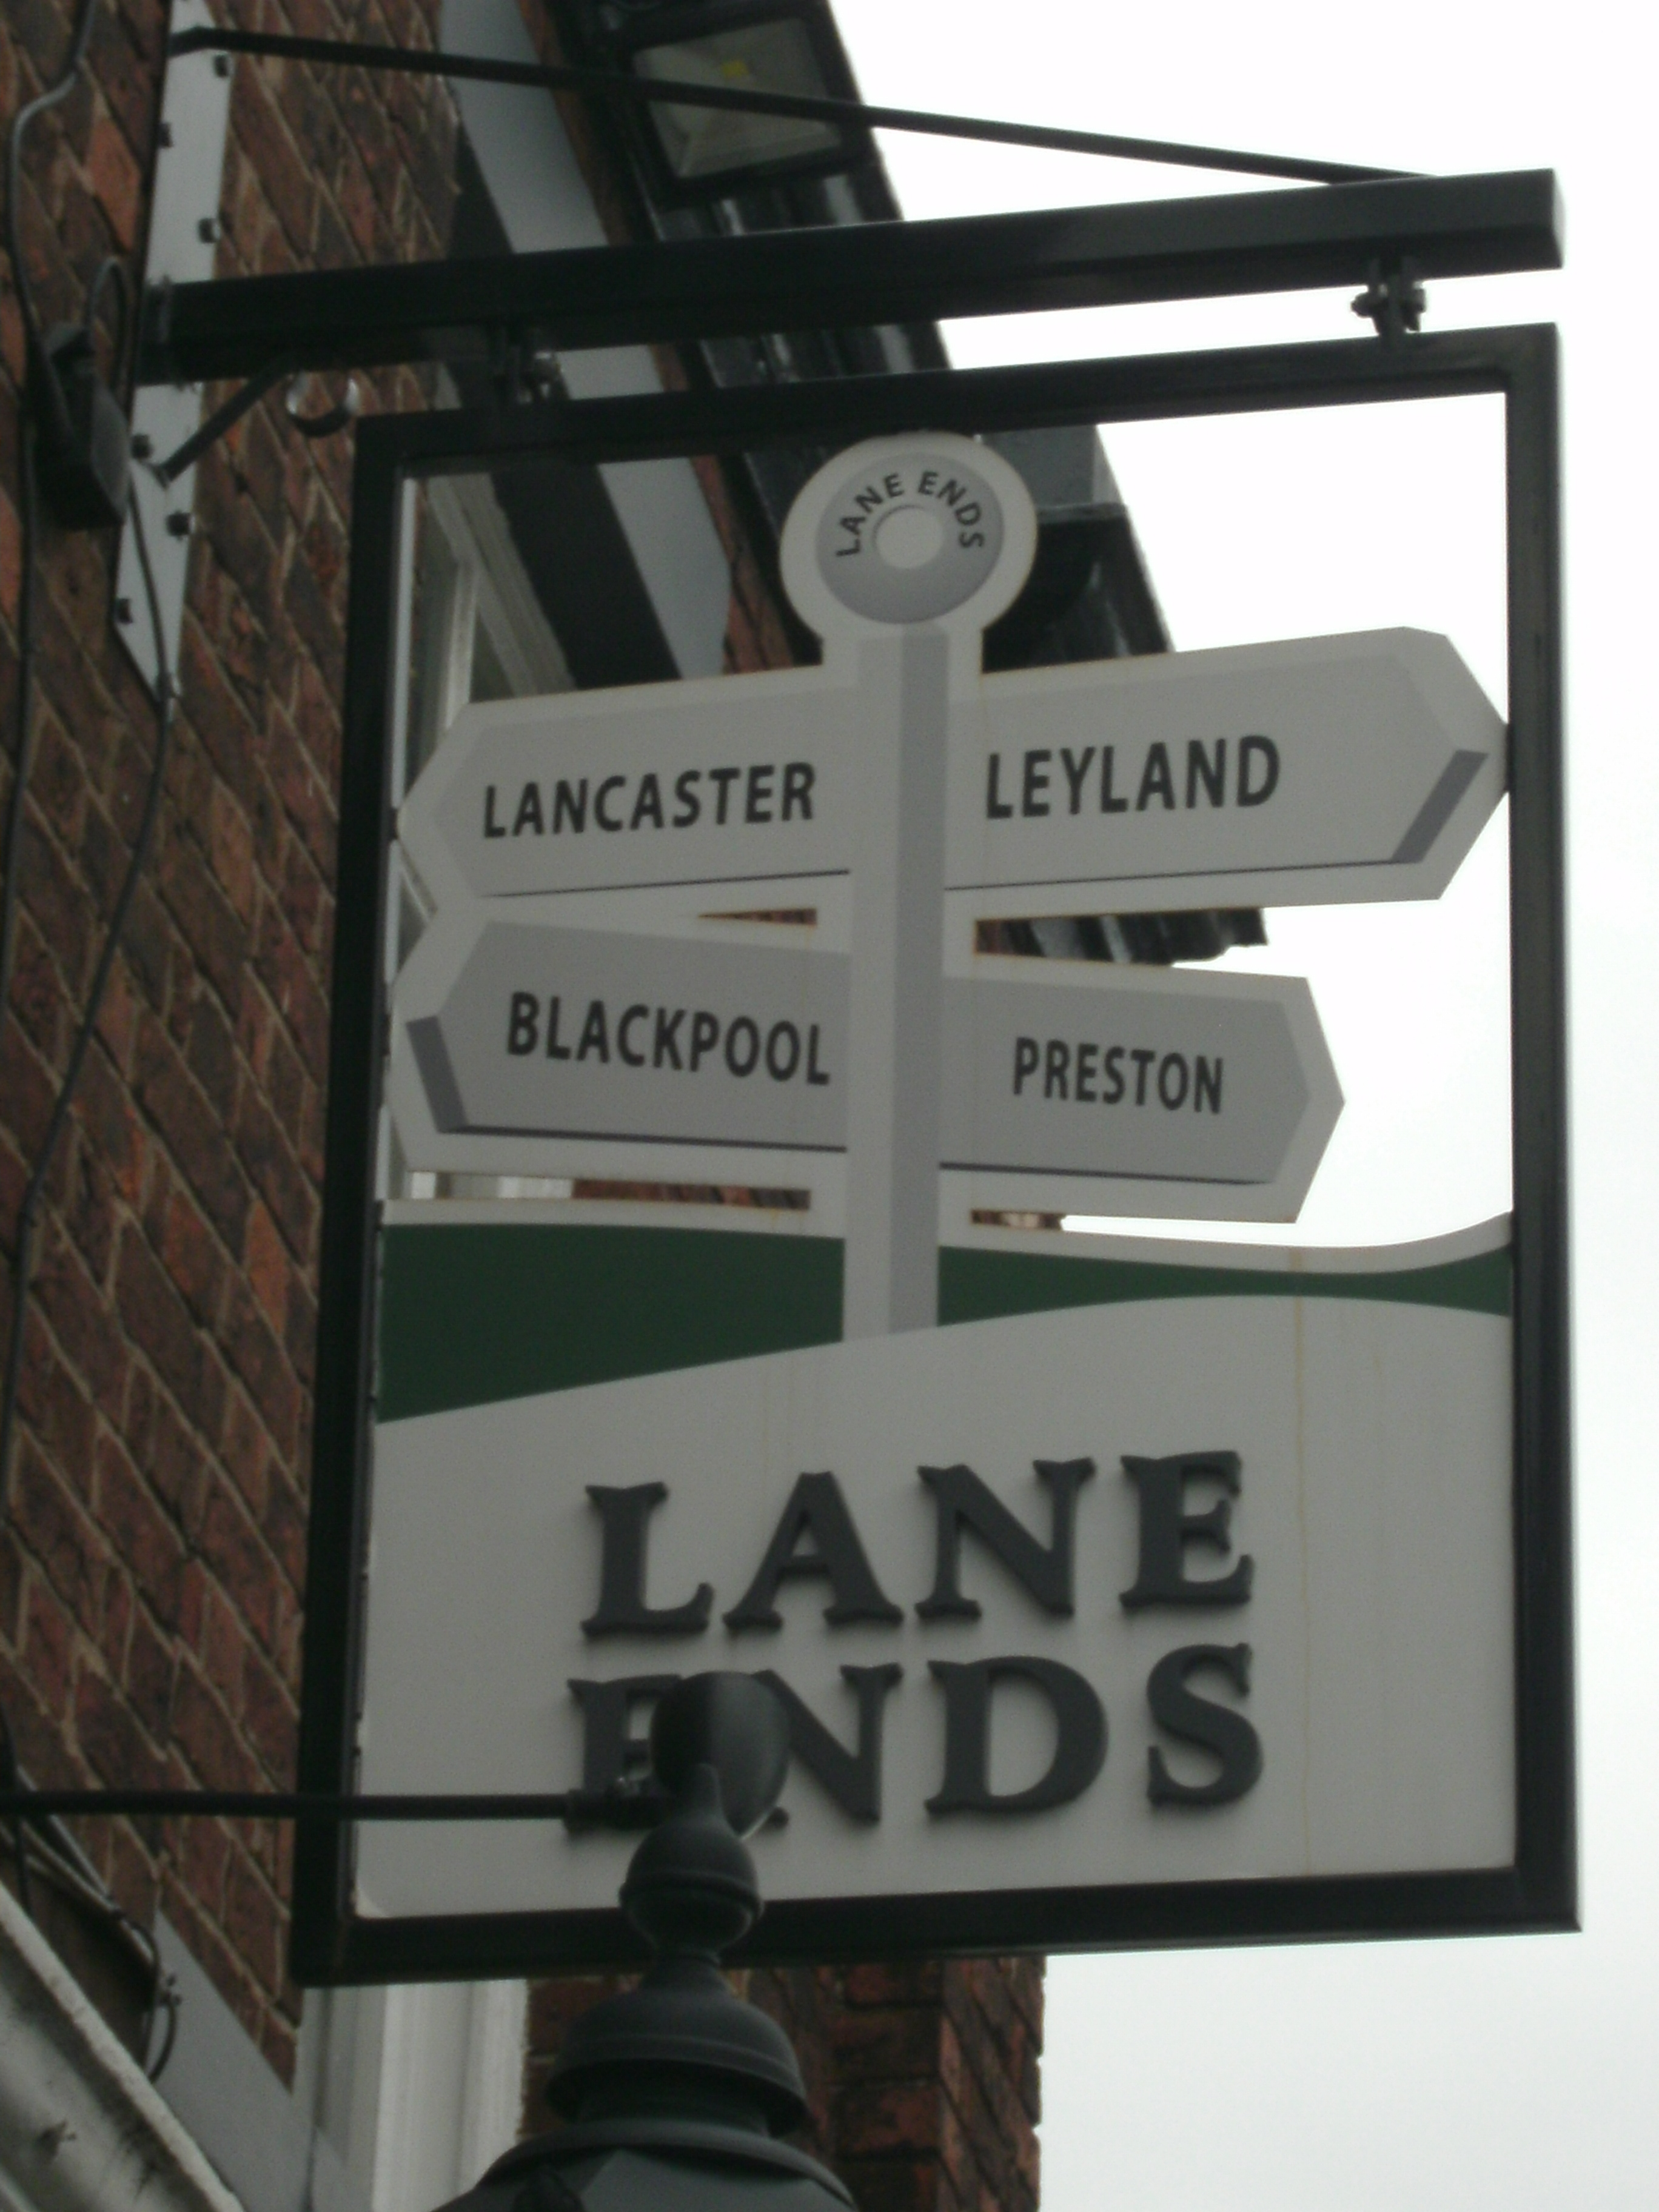  Photo taken by me – The Lane Ends pub sign – Preston 